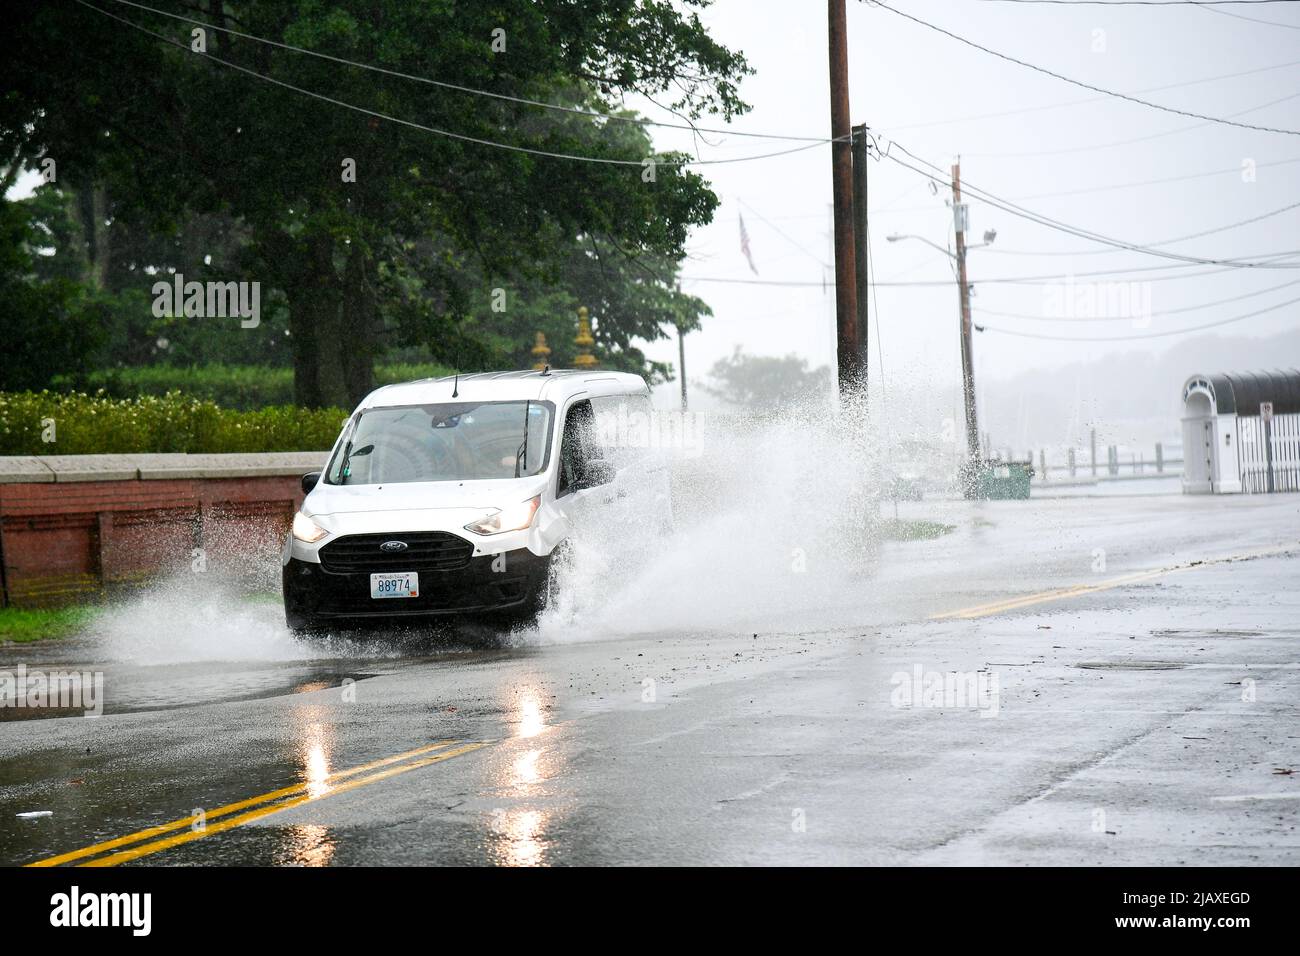 Stock-Fotos von Tropical Storm Elsa aus dem Jahr 2021 Drenching Newport, Rhode Island. Autos fahren durch Hochwasser am Eingang zur Insel Aquidneck. Stockfoto